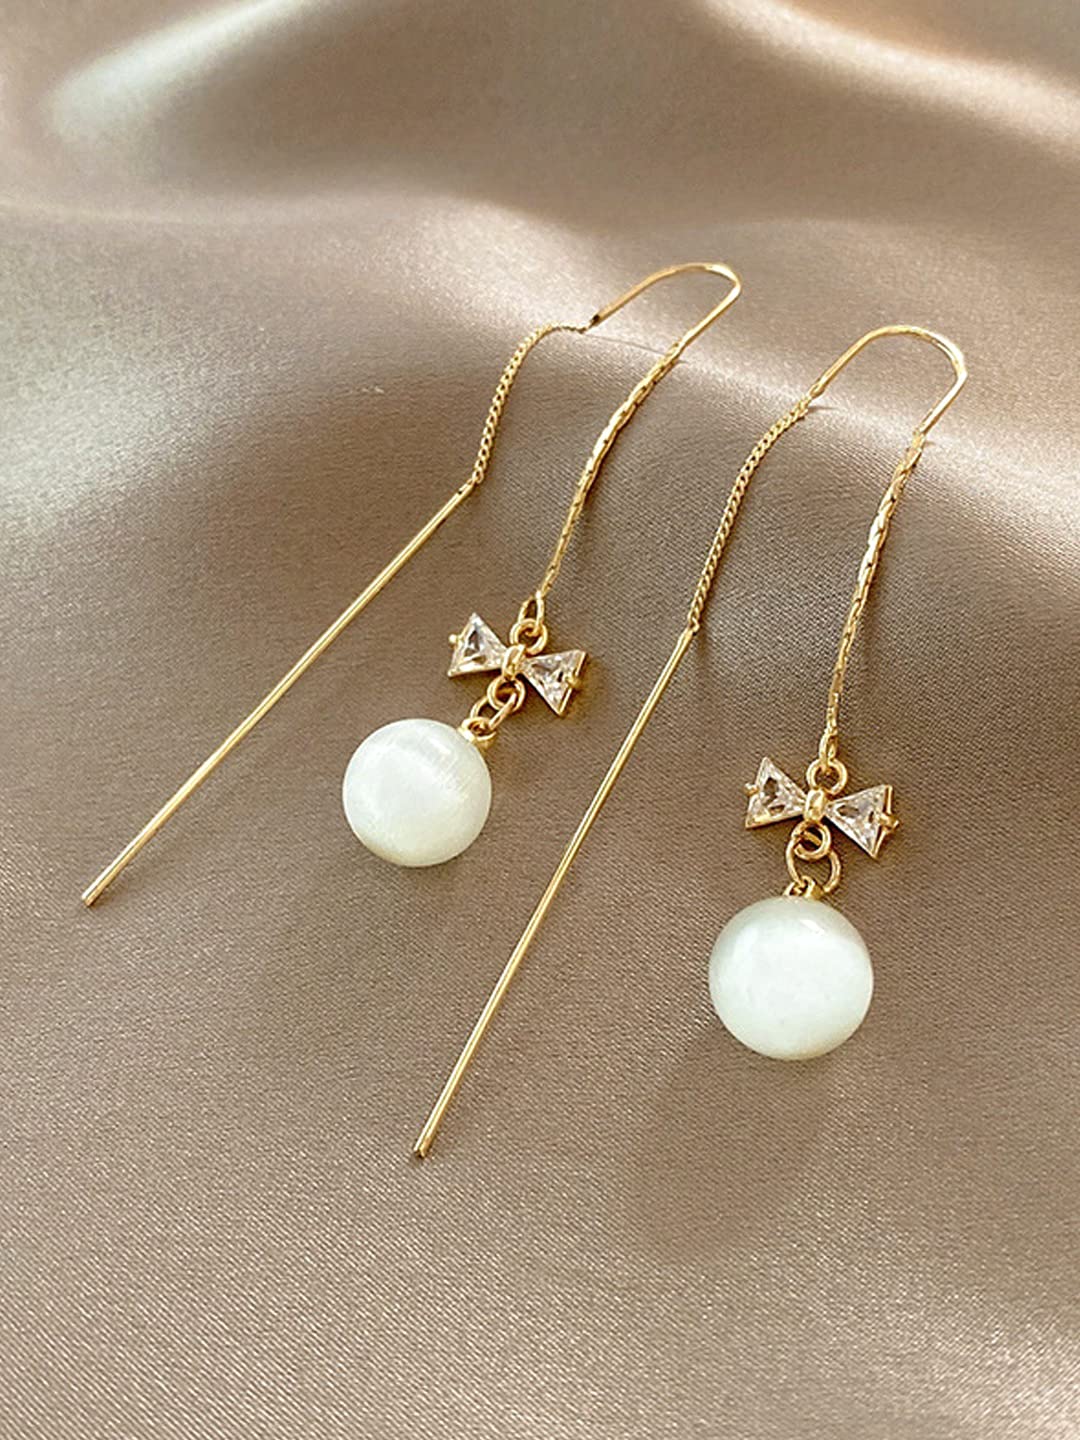 Buy 18K Gold Long Chain Tassel Earrings Simple Hook Jewelry for Women  Fashion Sleek Chain Dangle Drop Earrings for Party Linear Fringe Earring at  Amazonin